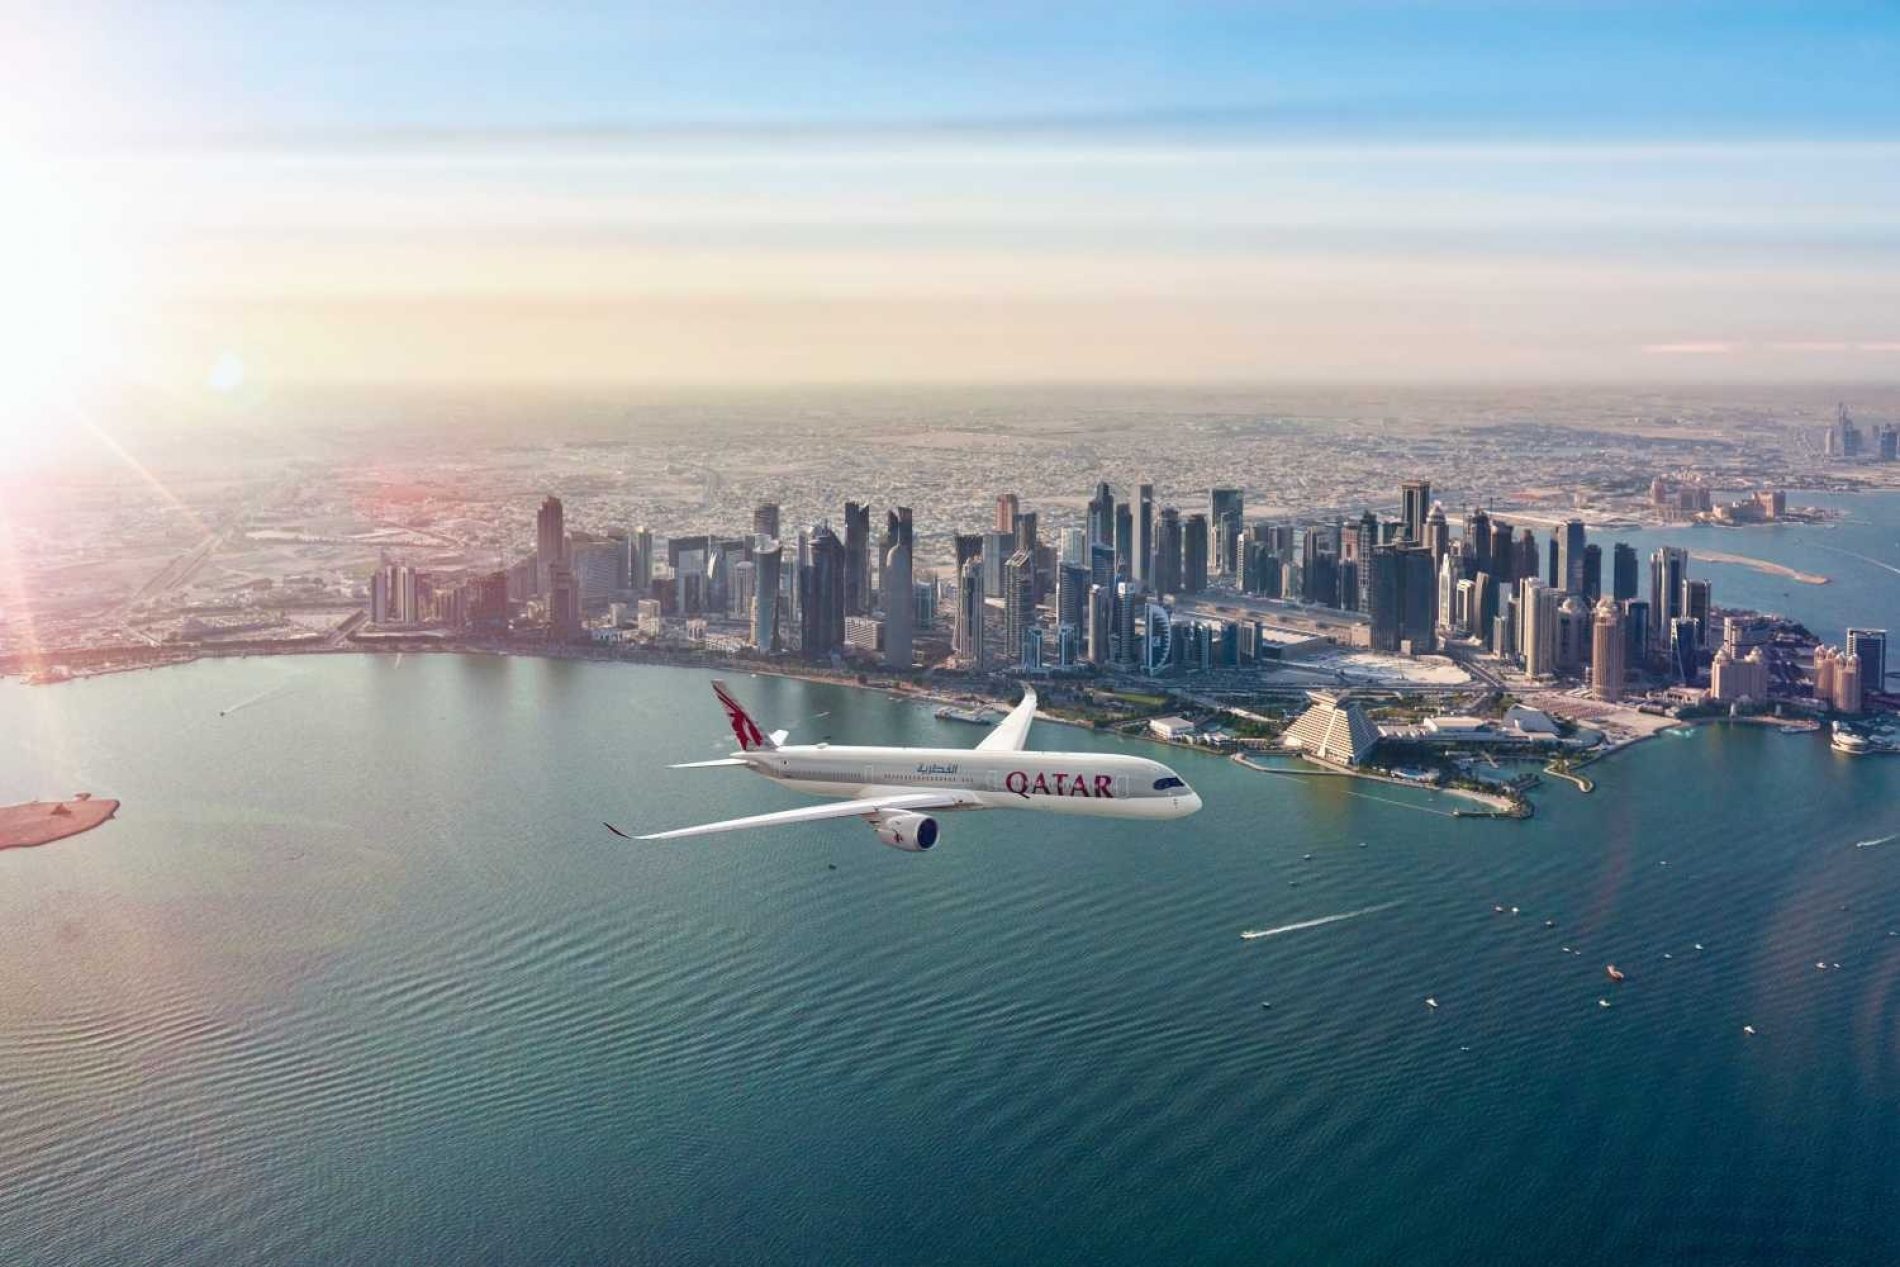 Katar šalje med. pomoć našoj zemlji najvećim avionom koji može sletjeti na aerodrom